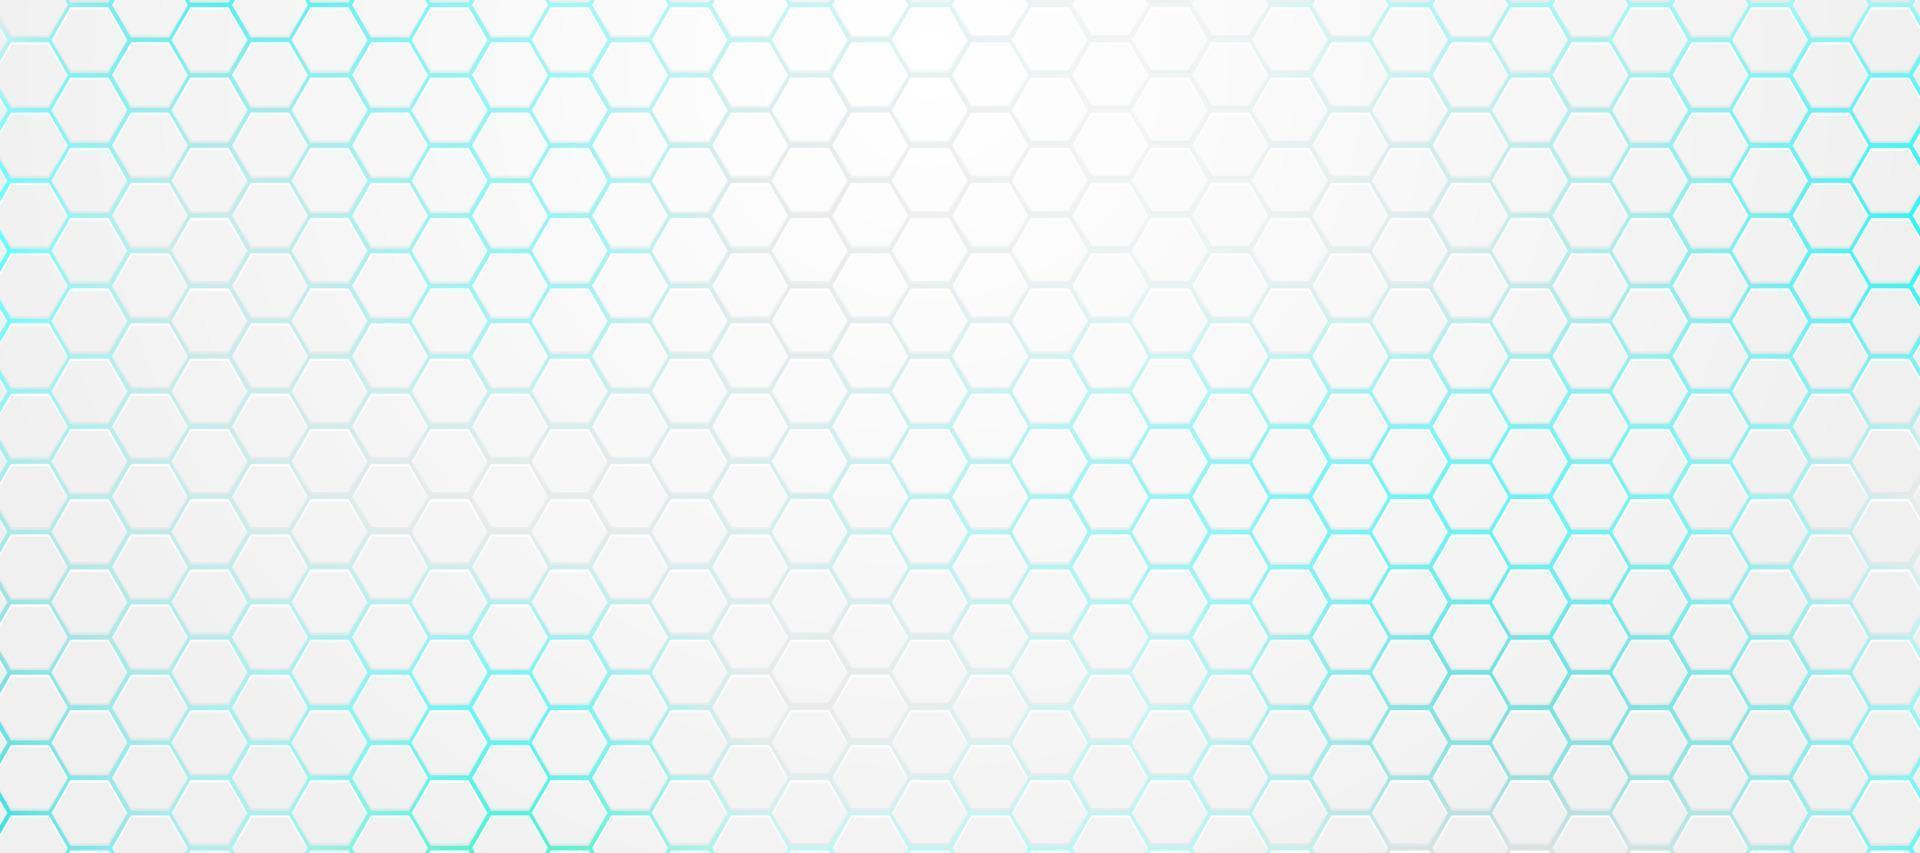 abstract wit, grijs zeshoekpatroon op lichtblauwe neonachtergrondtechnologiestijl. modern futuristisch geometrisch vormontwerp. kan gebruiken voor voorbladsjabloon, poster, flyer, printadvertentie. vector illustratie